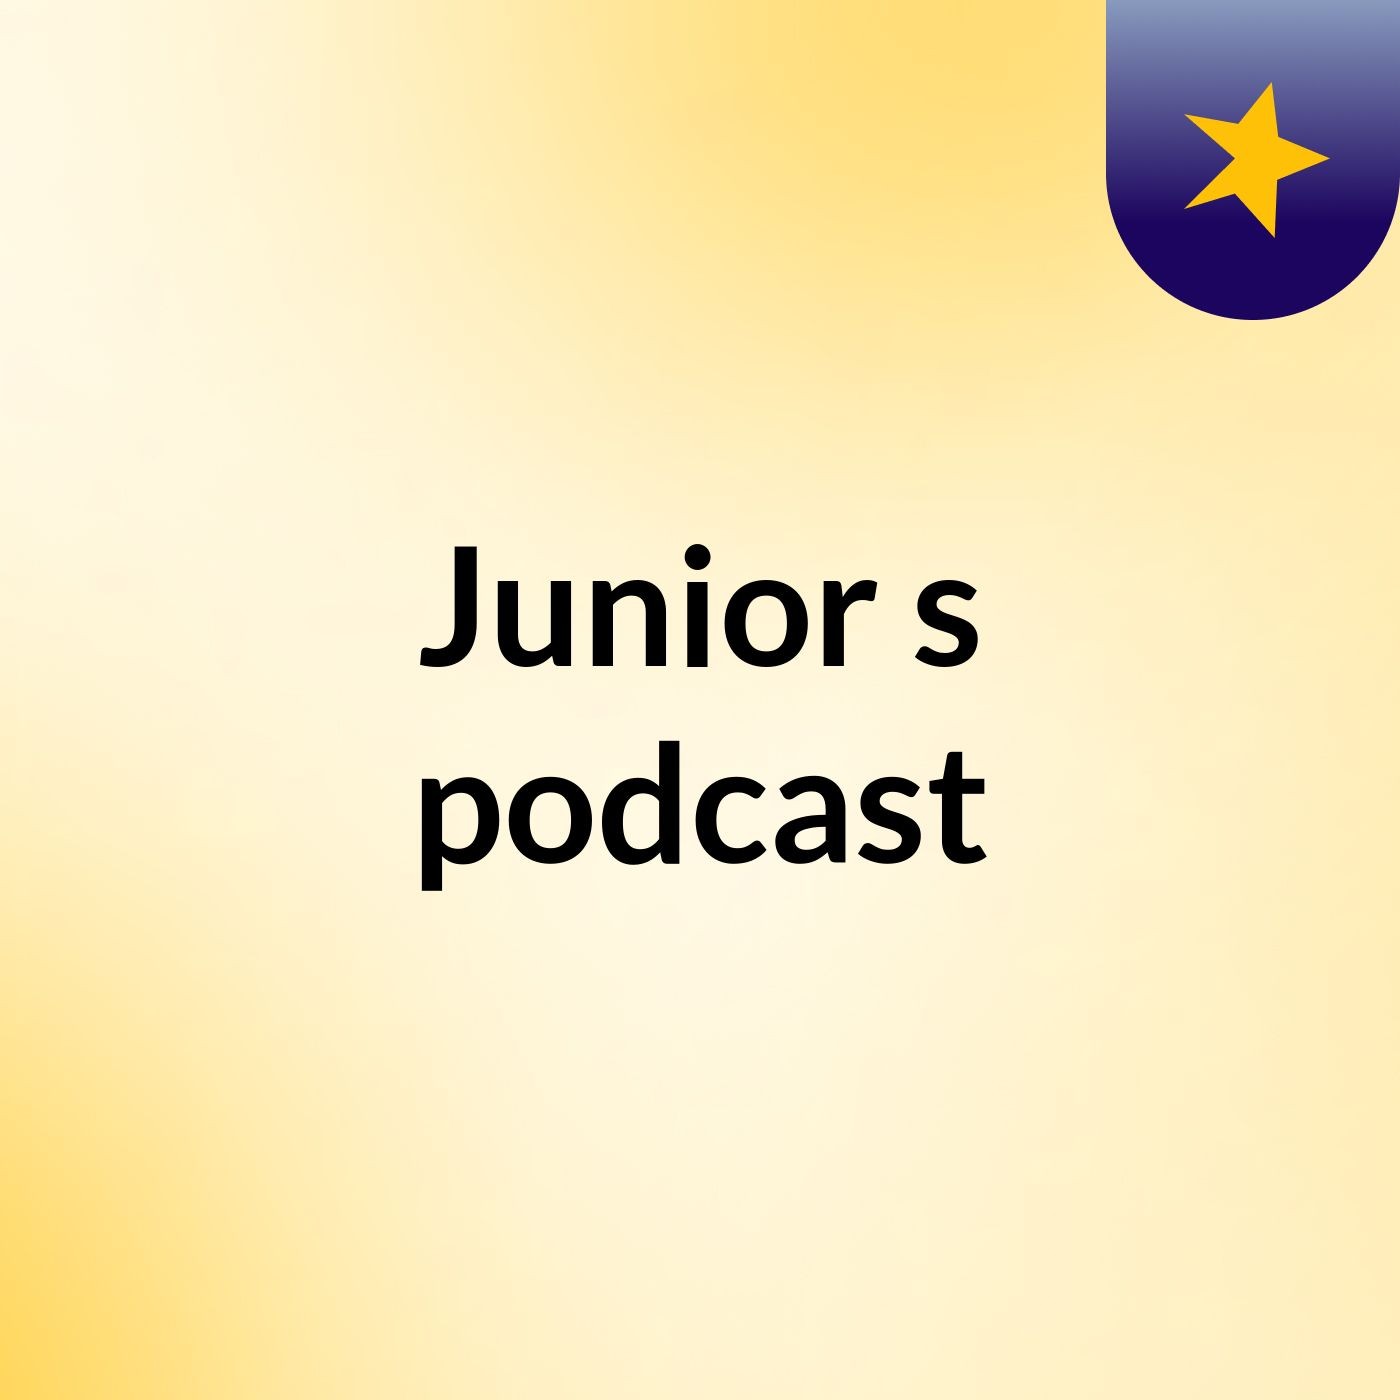 Episode 2 - Junior's podcast